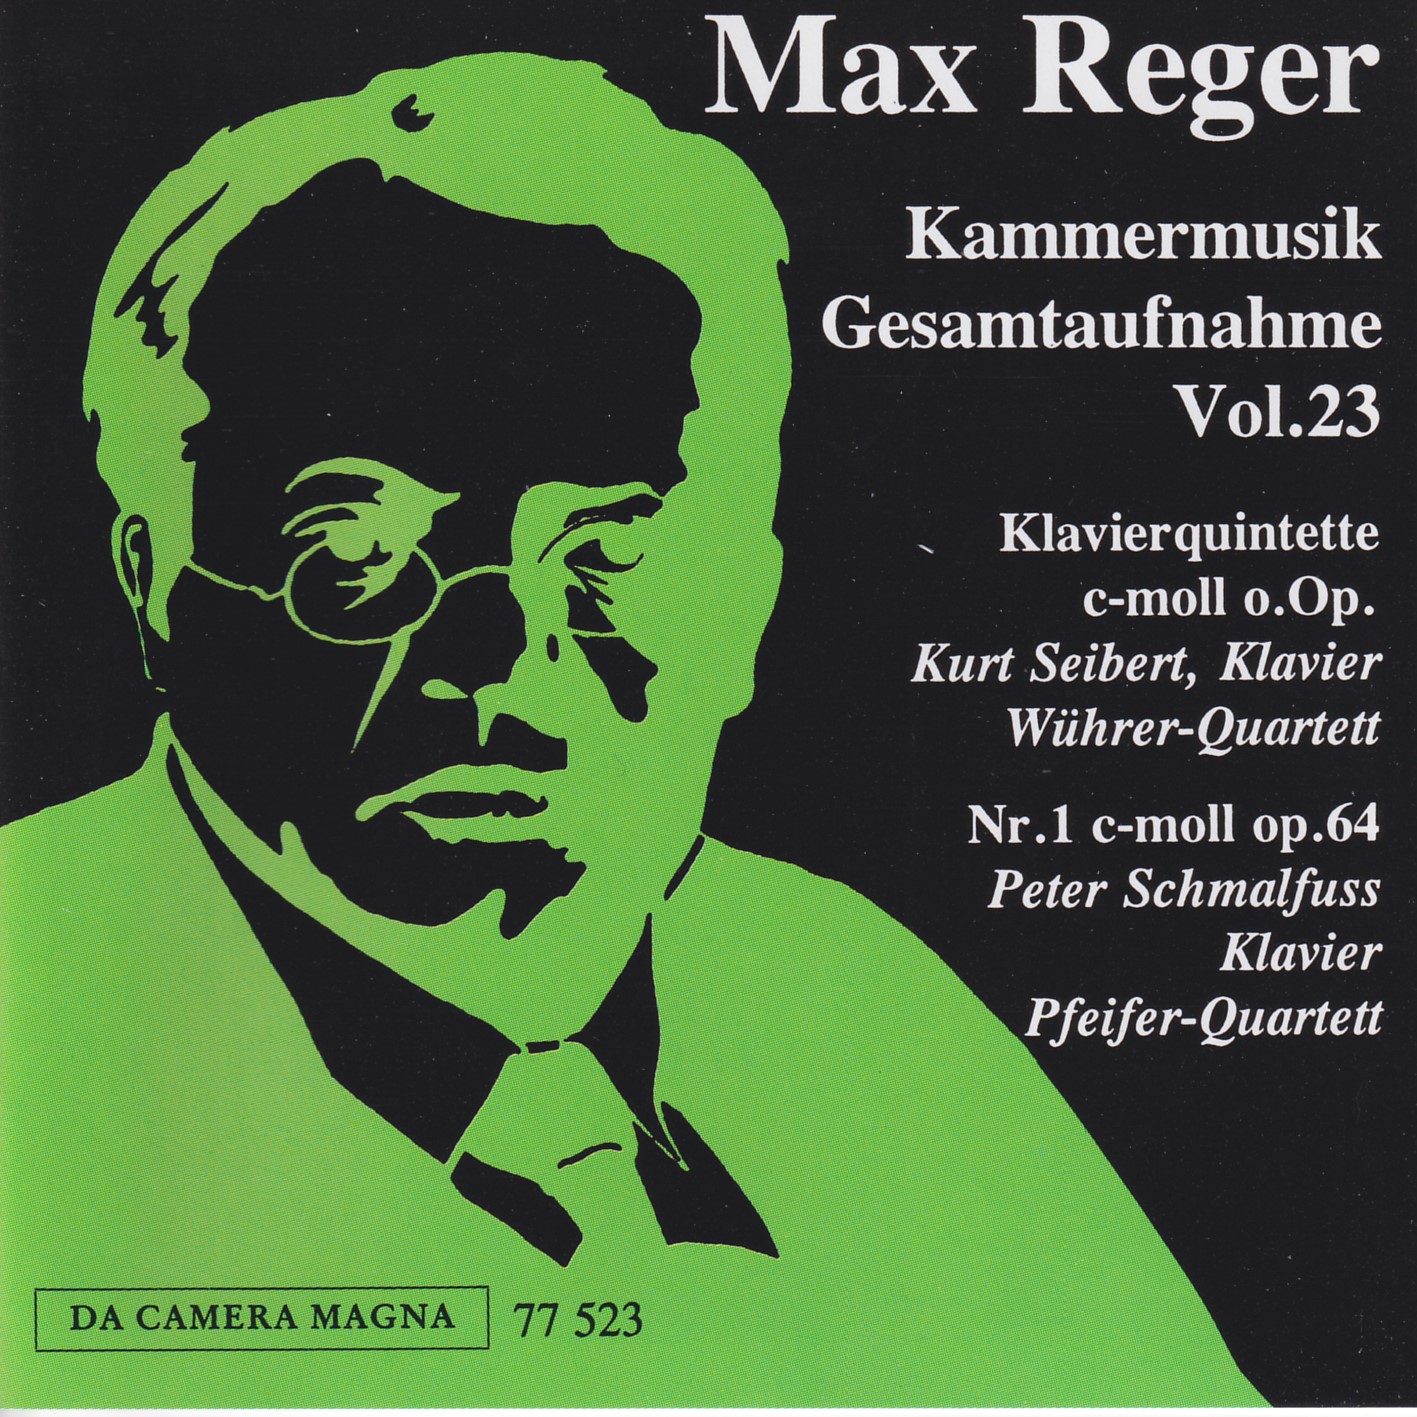 Max Reger - Kammermusik komplett Vol. 23